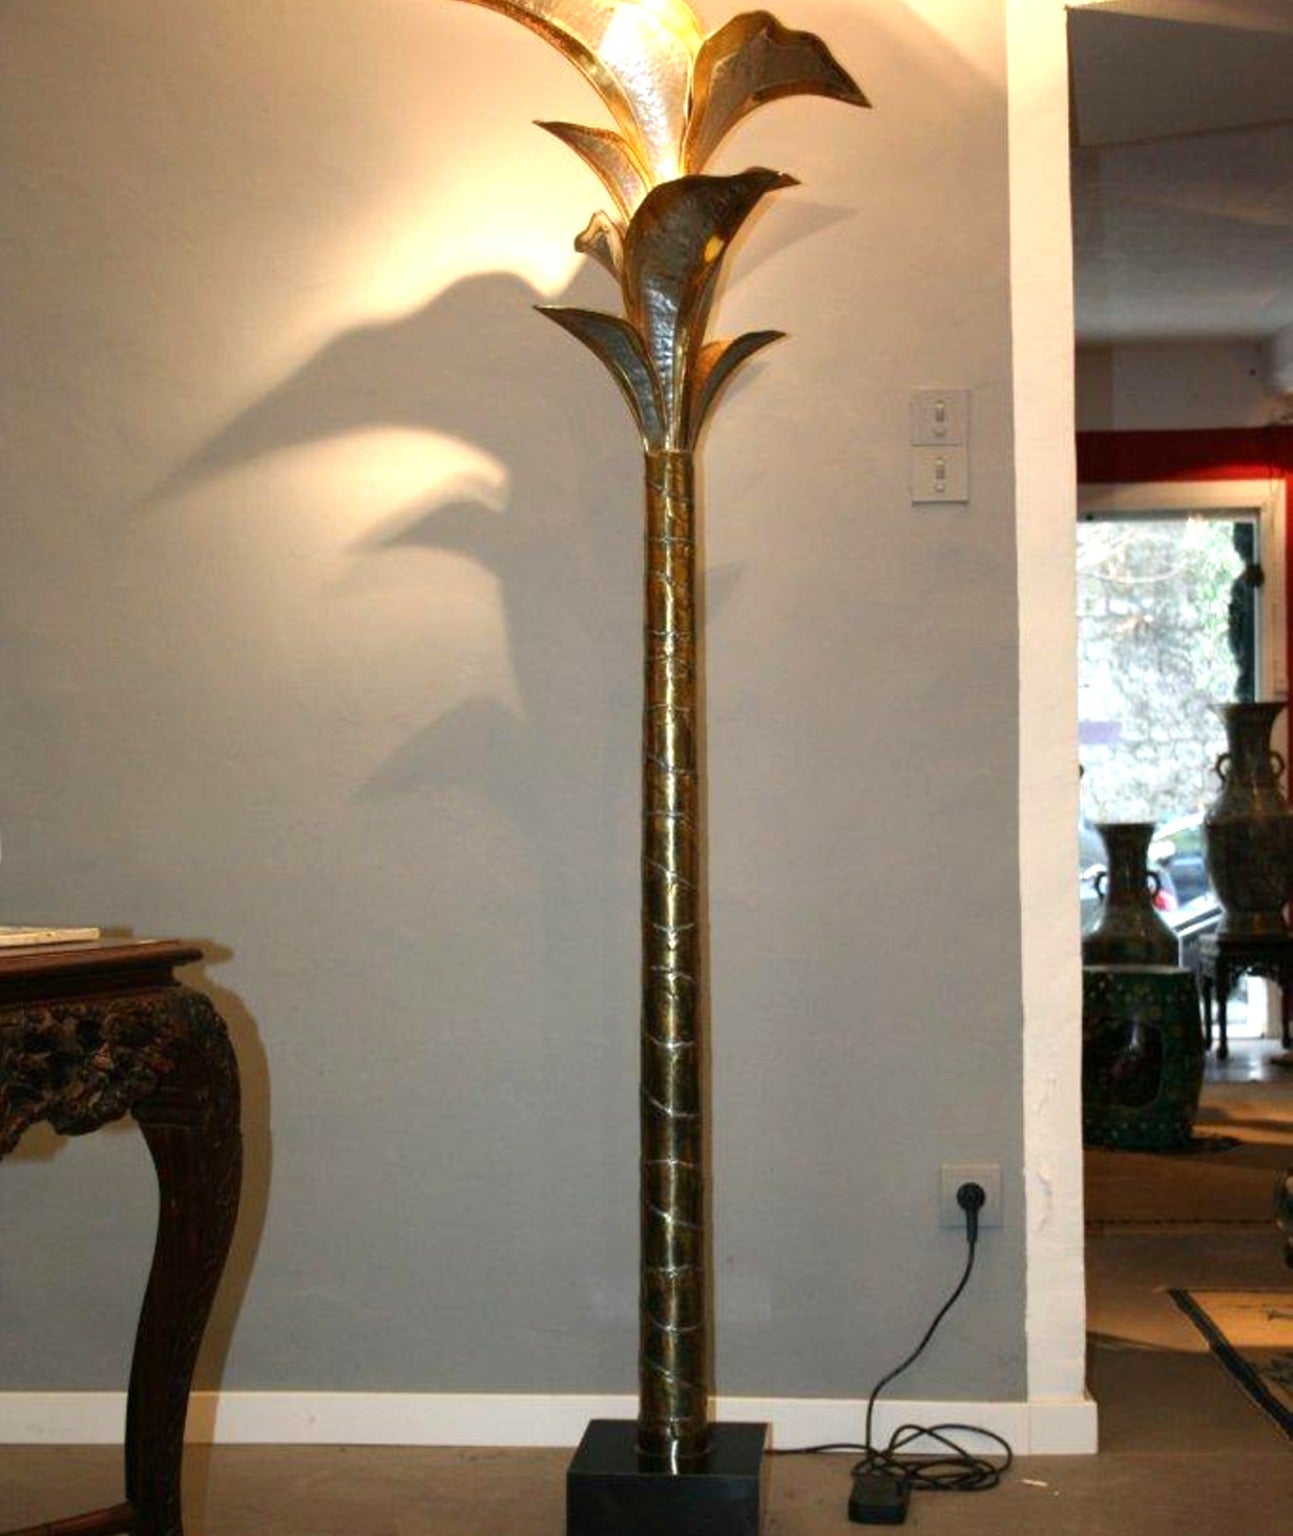 Banana Three floor-lamp st of Duval Brasseur